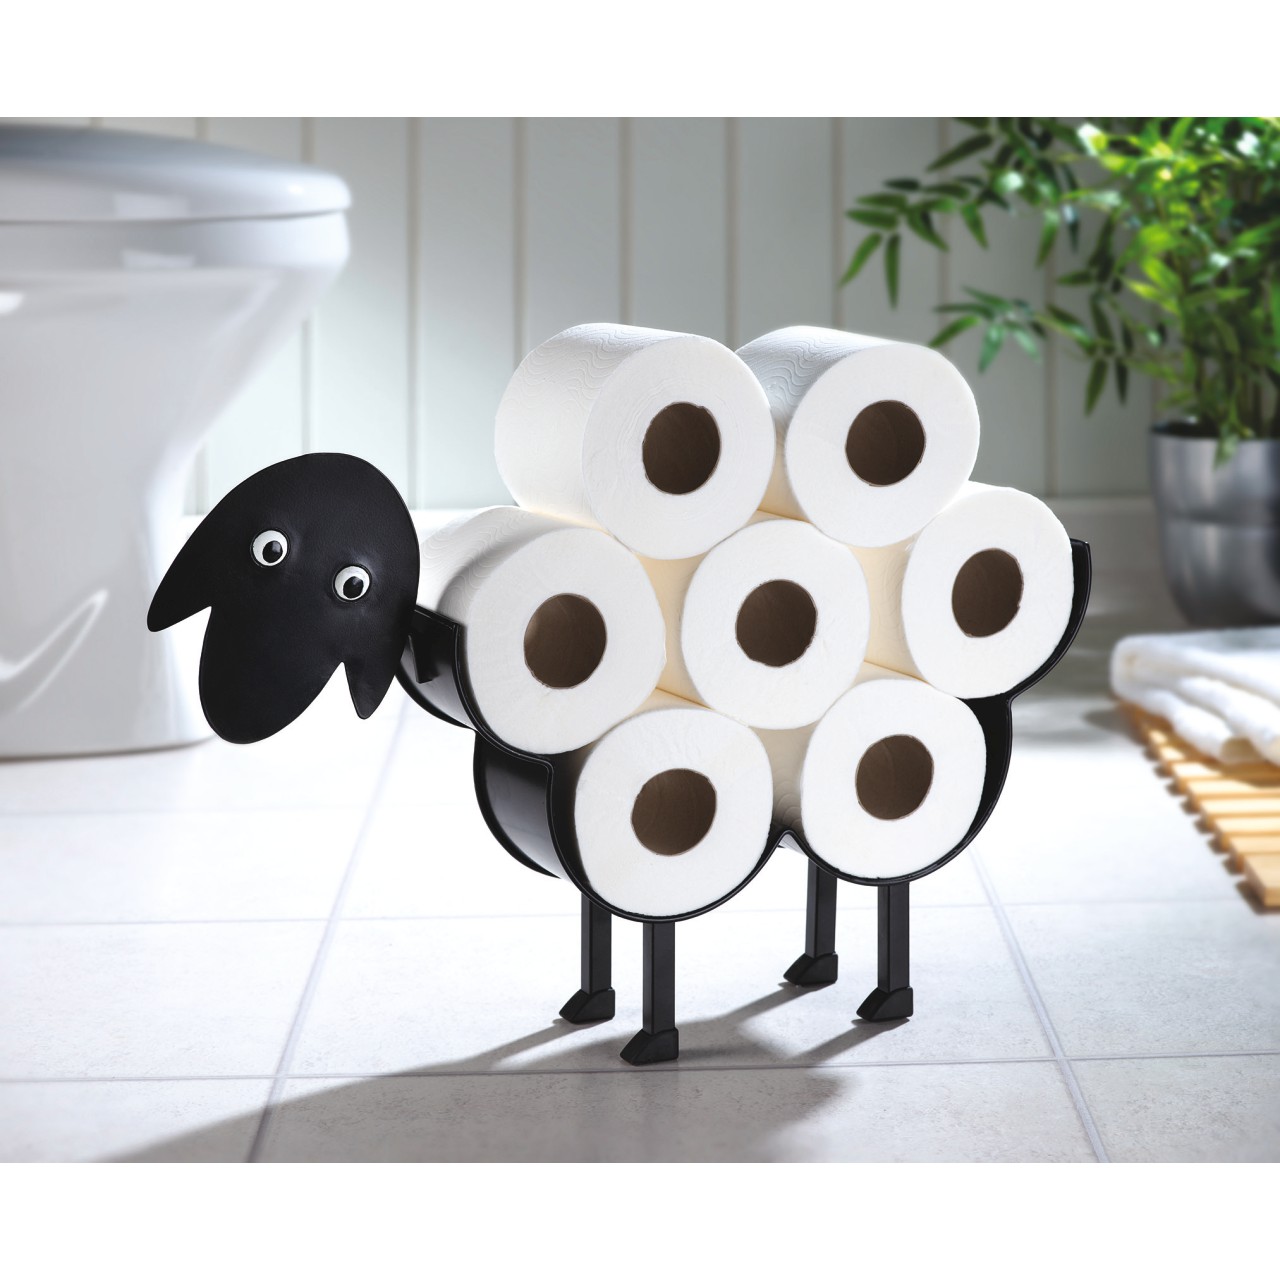 Baabara the Sheep Toilet Roll Holder